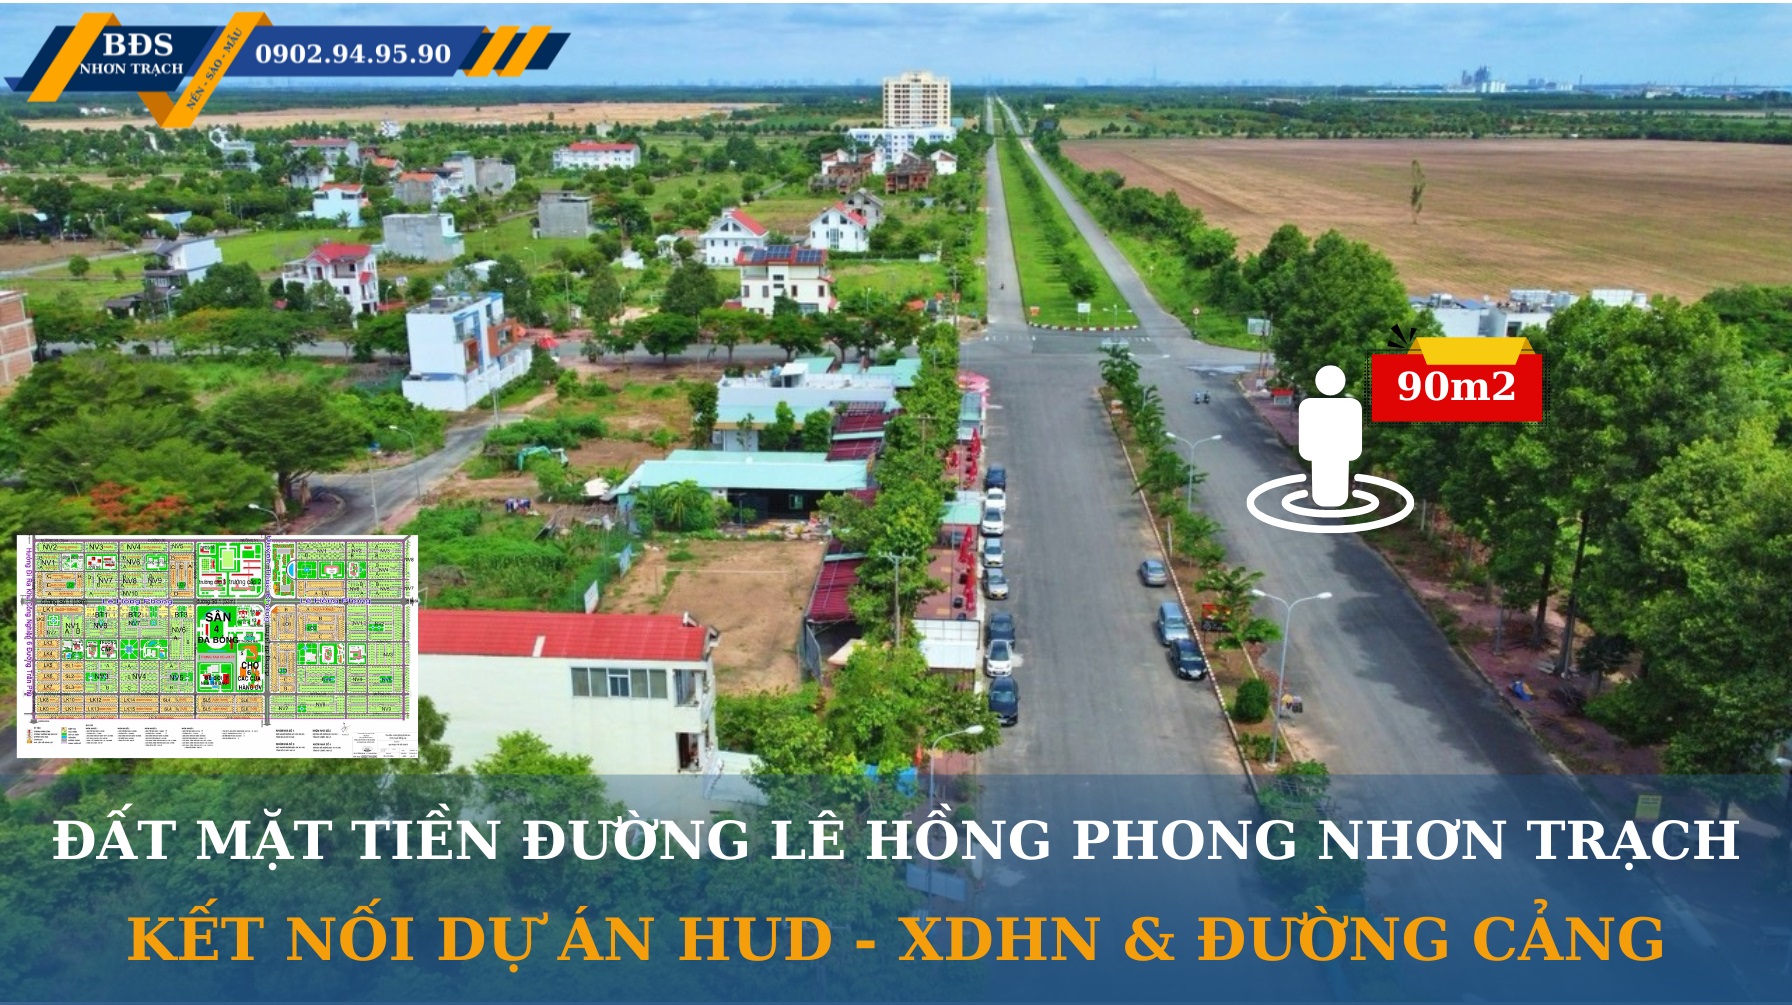 Bán nền đất Nhà Phố  mặt tiền đường Lê Hồng Phong LG53m thuộc dự án Hud Nhơn Trạch - DT 90m2 Full - Ảnh 4